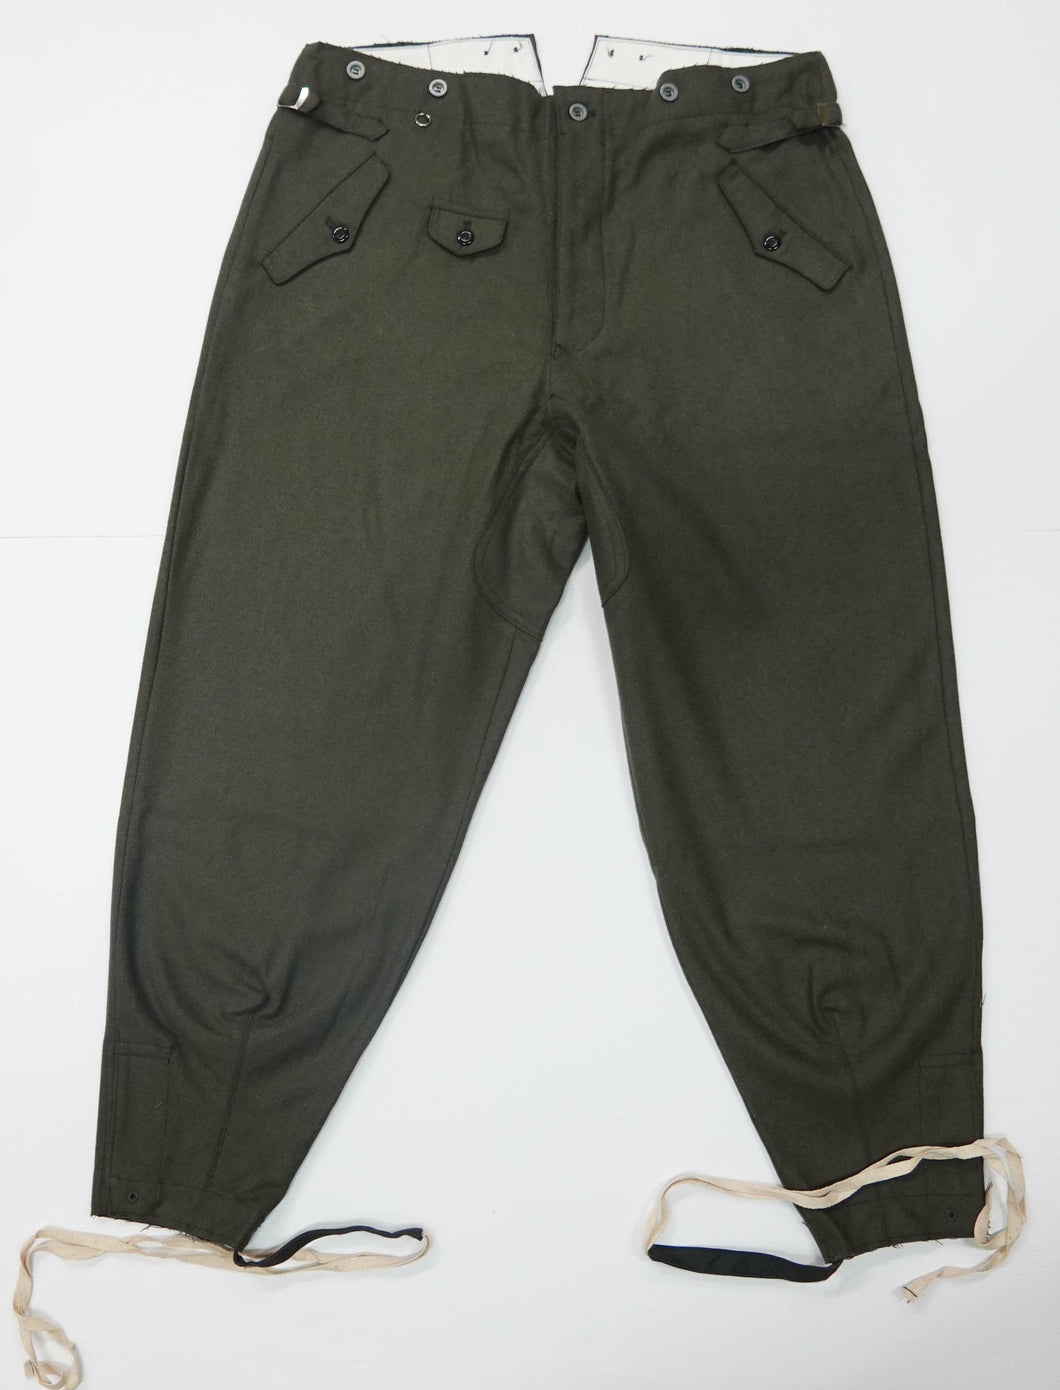 WW2 Riproduzione Pantalone Mod 36 Germania